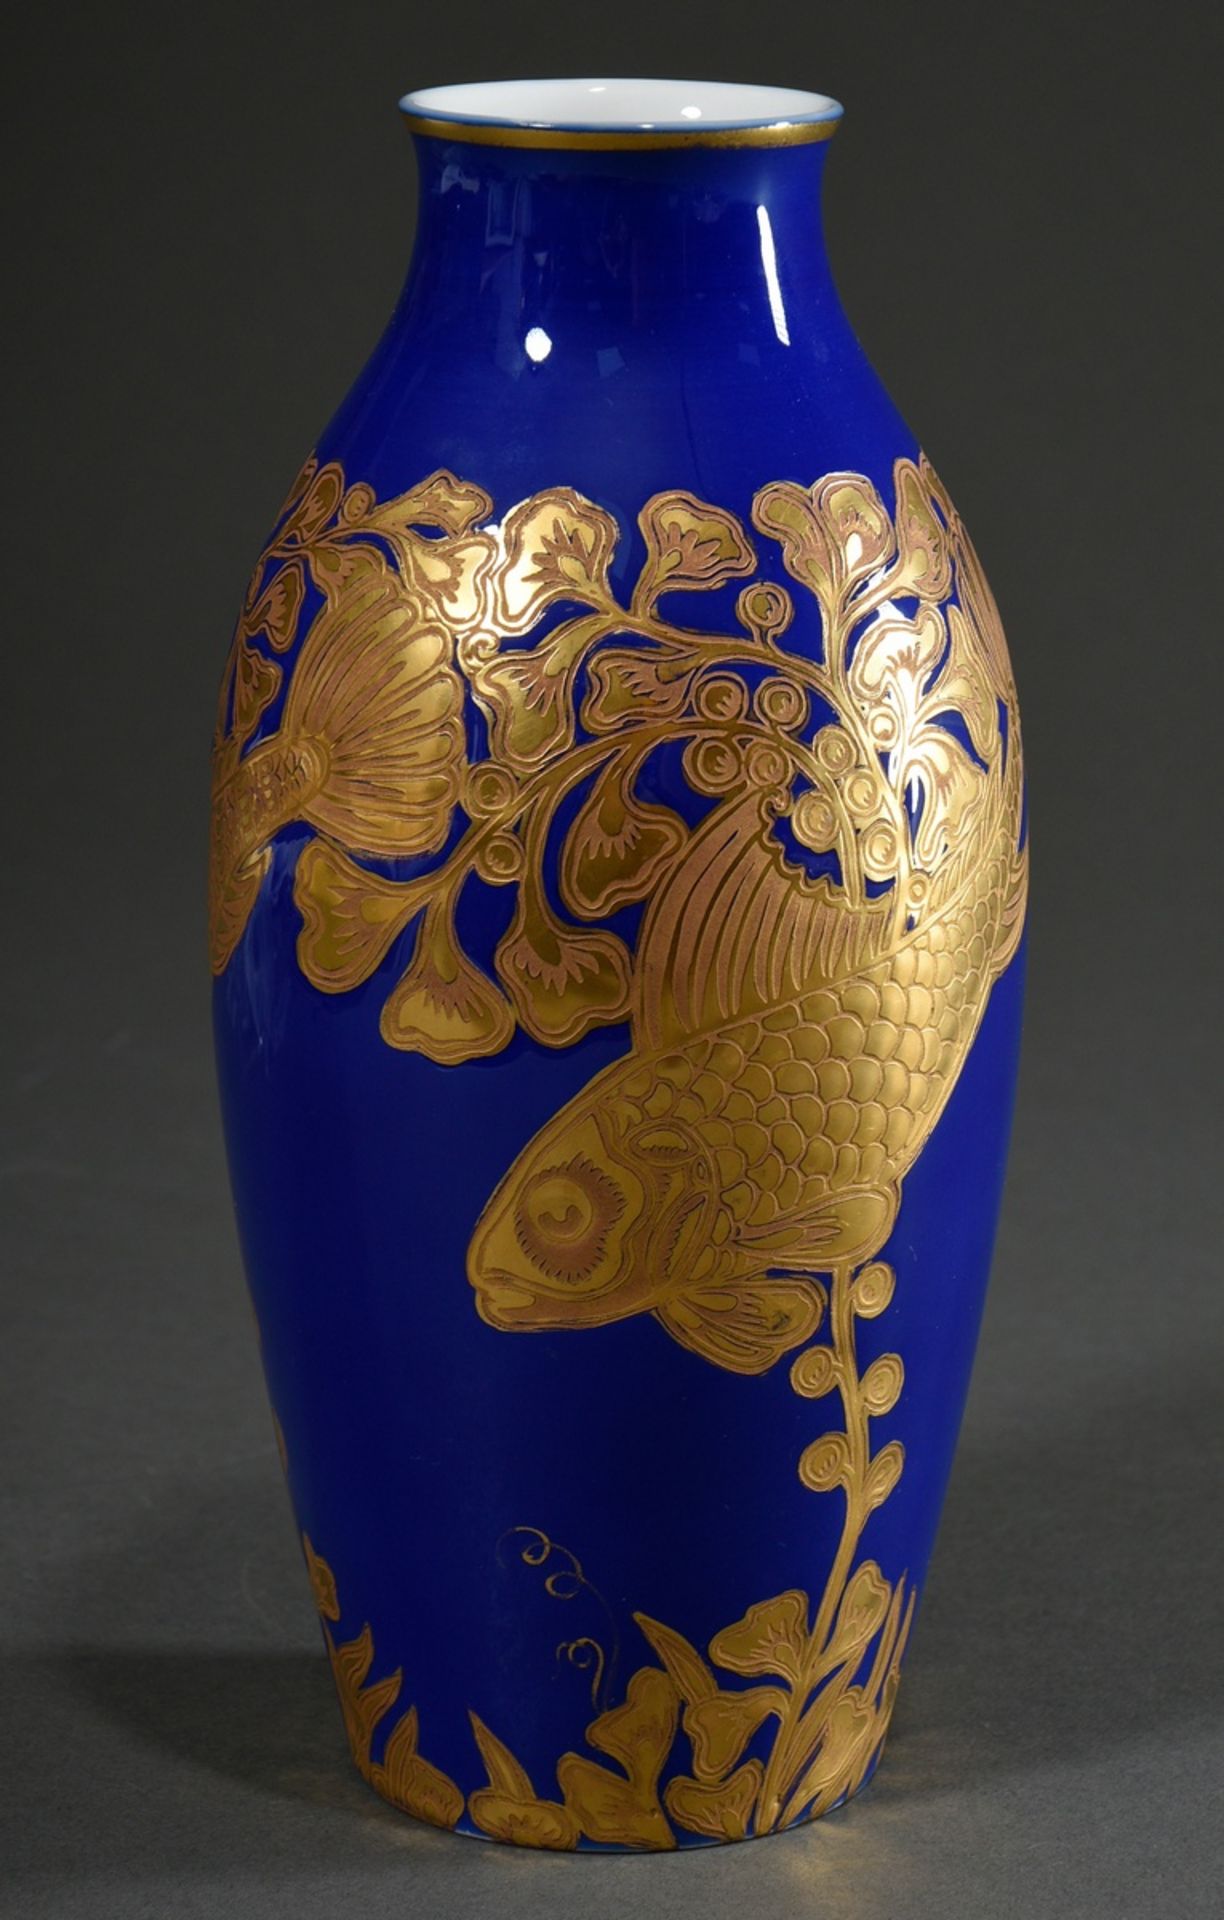 Rosenthal Vase mit vergoldetem Reliefdekor "Fische zwischen Wasserpflanzen" auf royalblauem Fond, u - Bild 2 aus 4